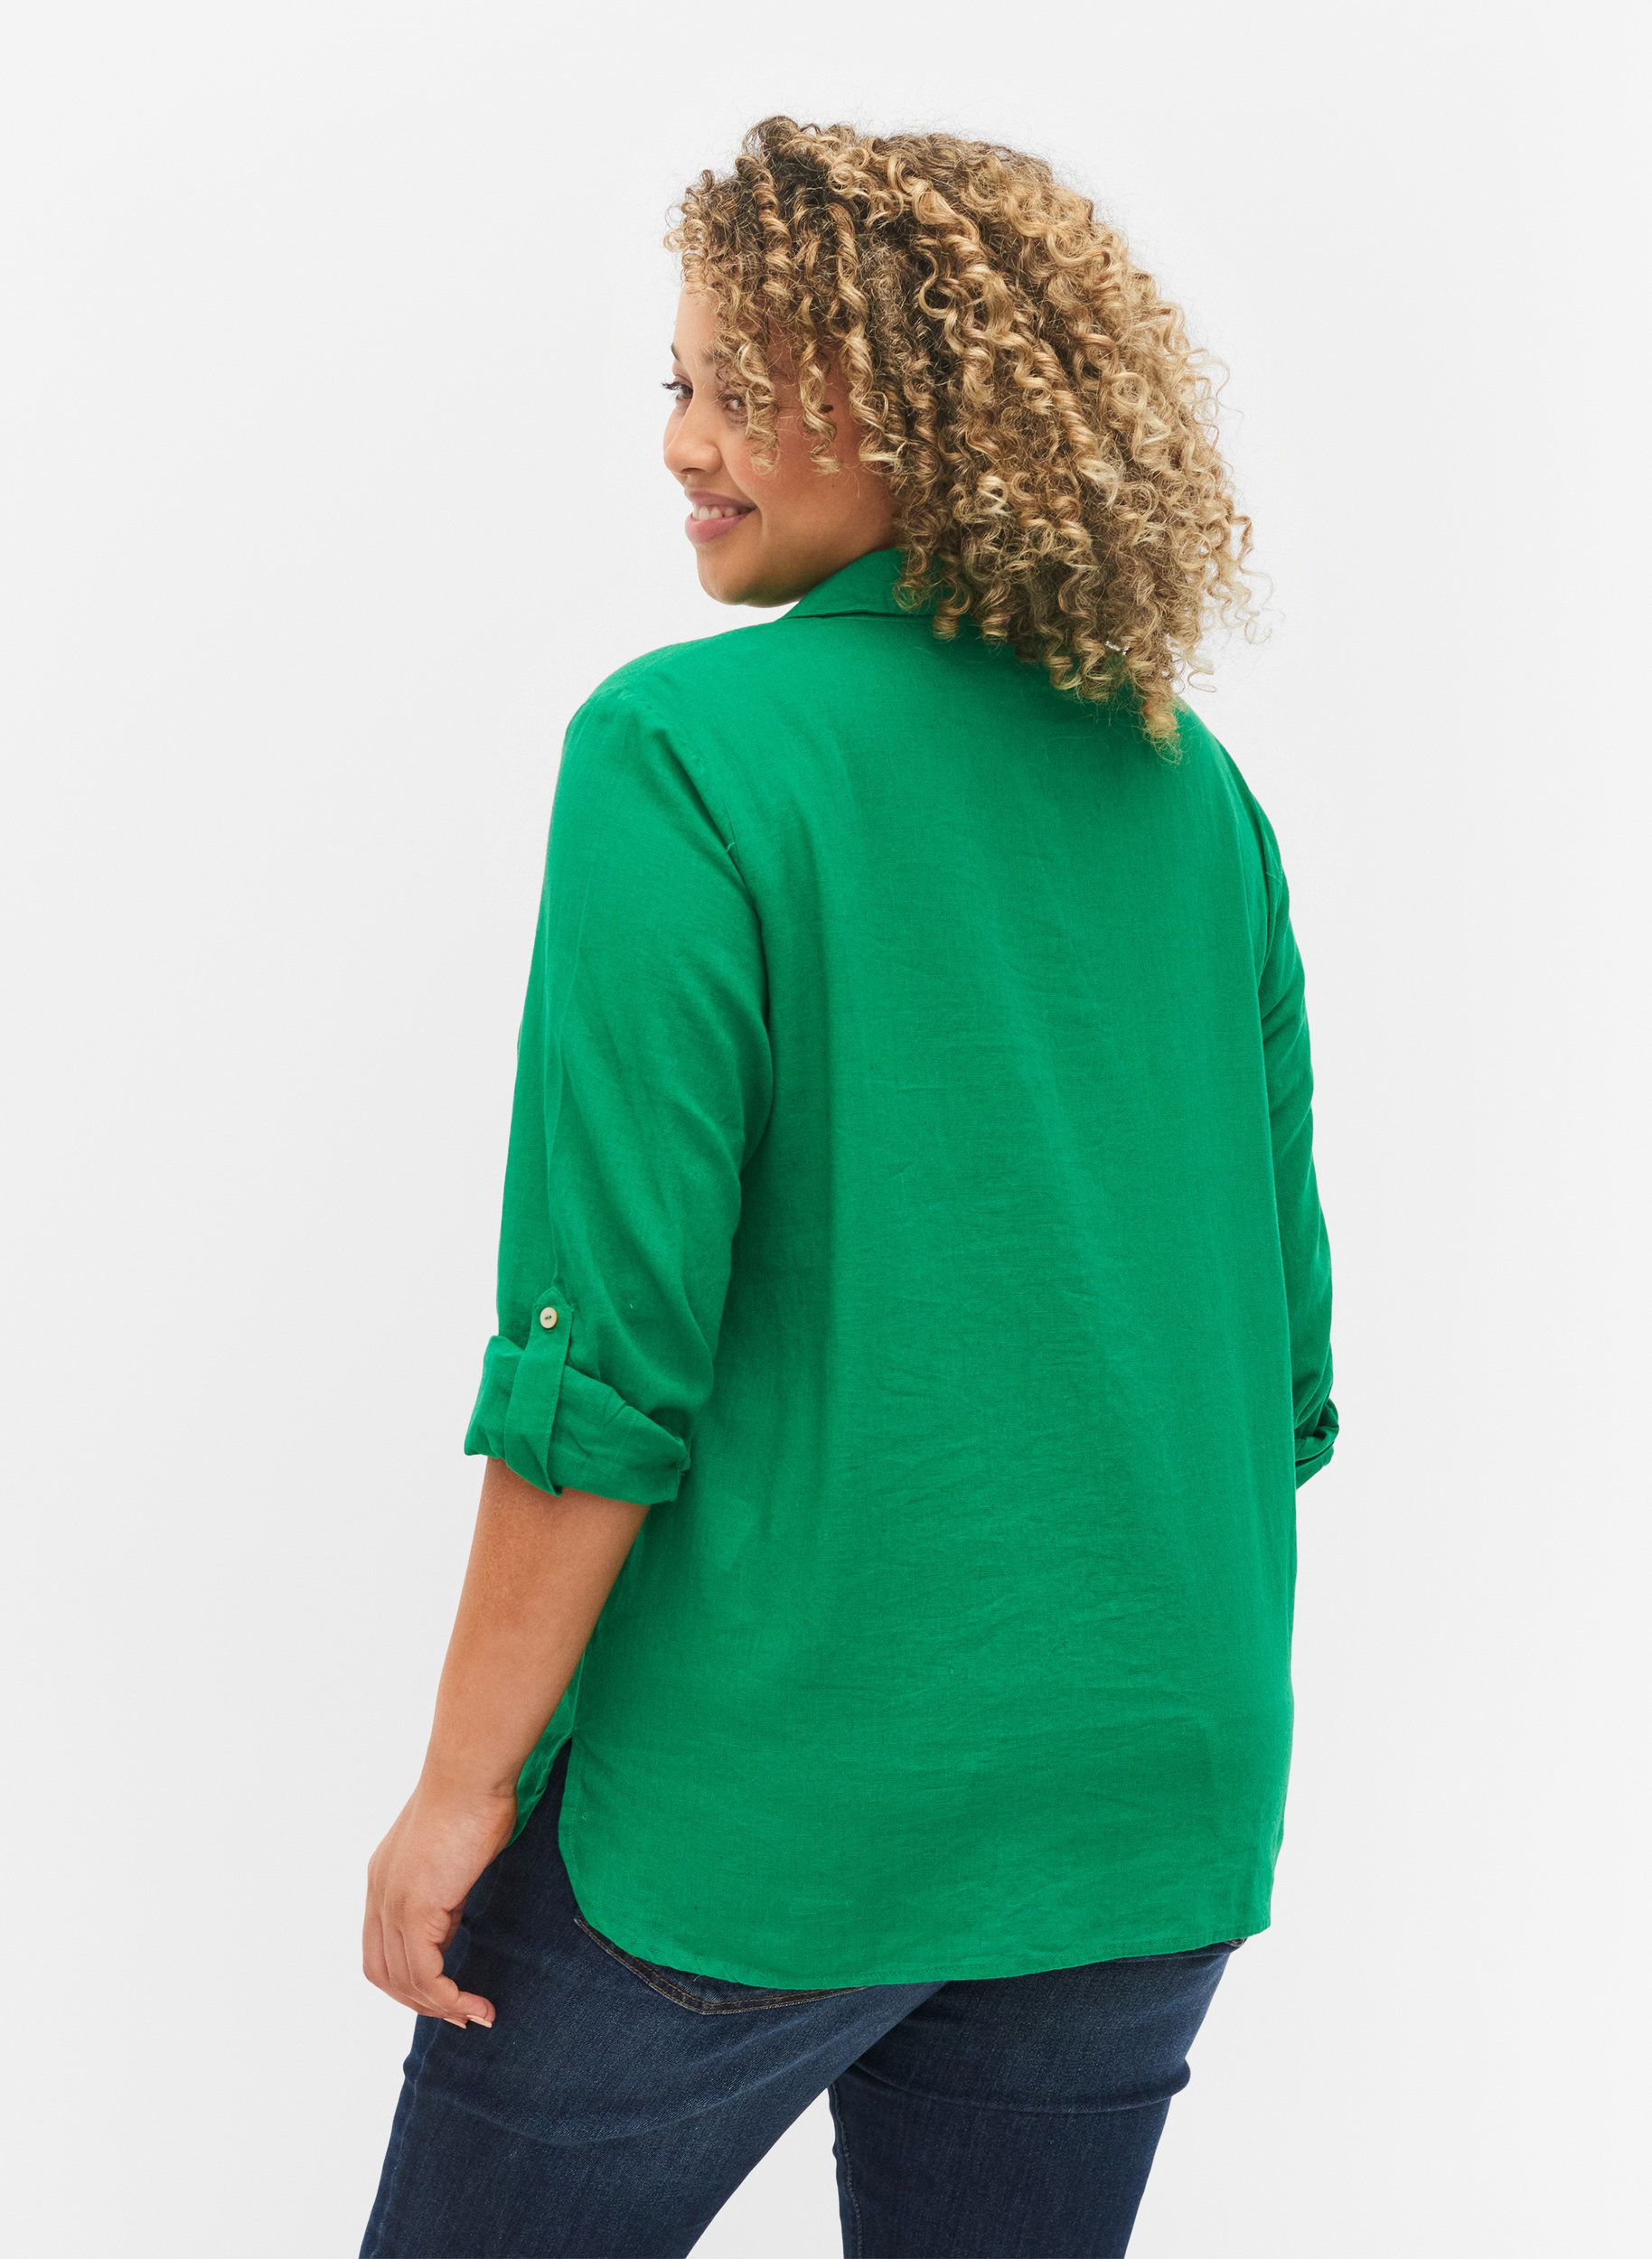 Bluse med 3/4 ærmer og knapper, Jolly Green, Model